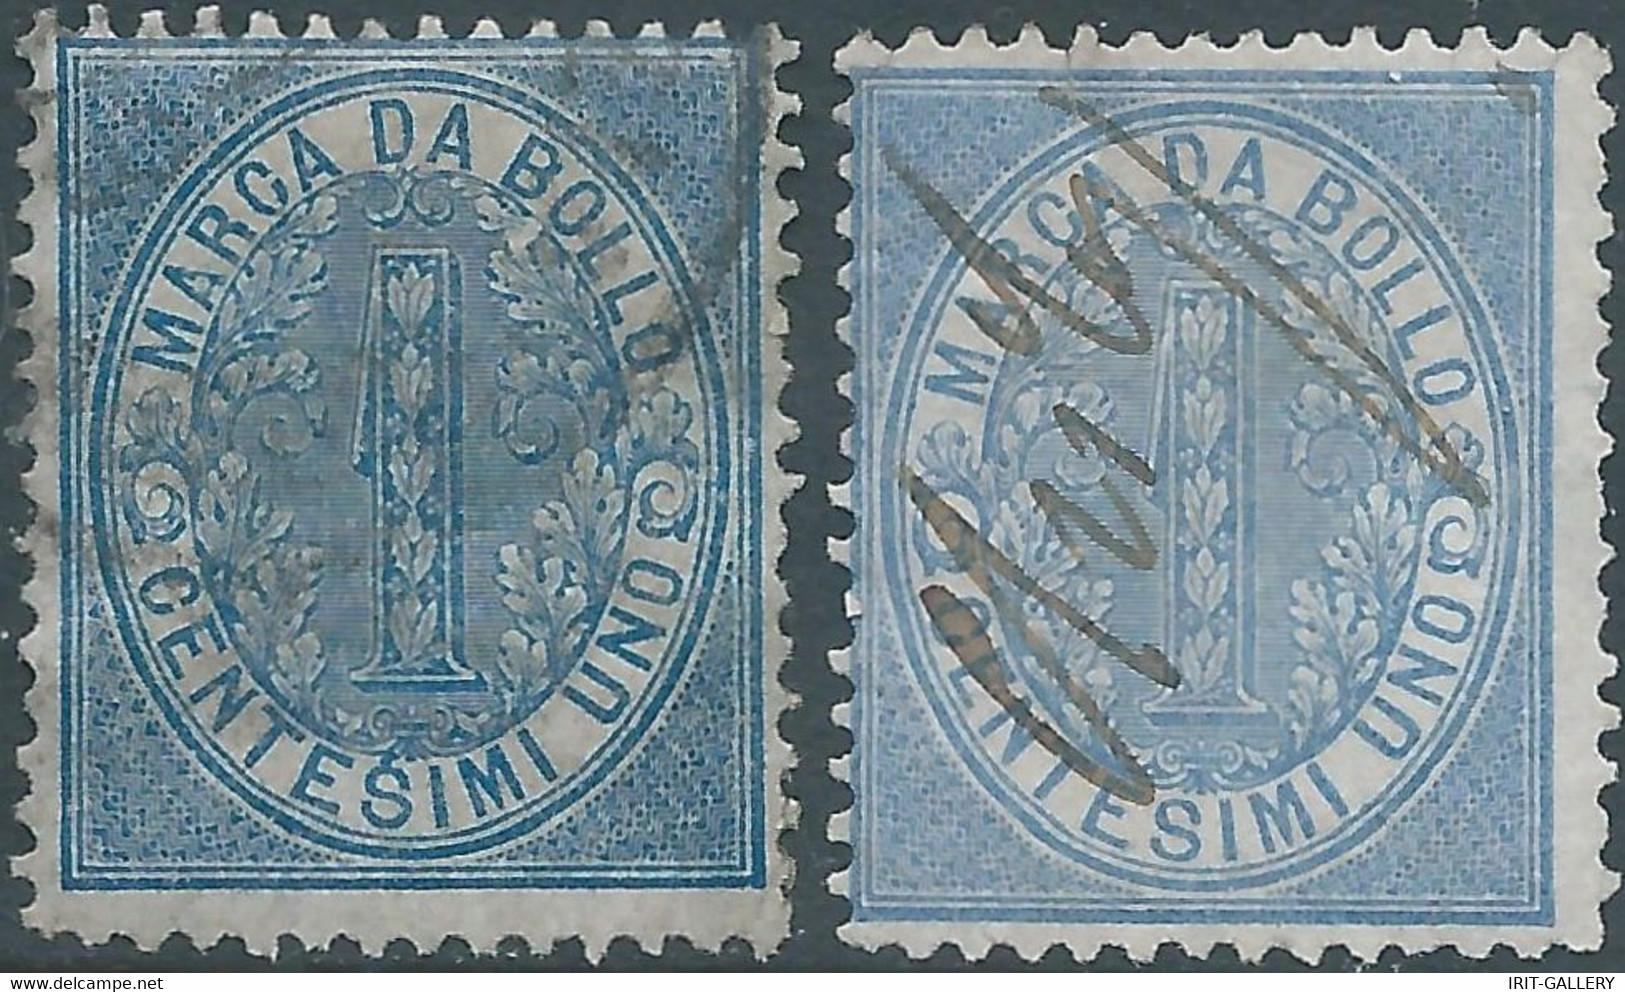 ITALIA-ITALY-ITALIEN,1868 Marca Da Bollo,Revenue Fiscal -Tax 2X 1Cent,Used - Fiscaux